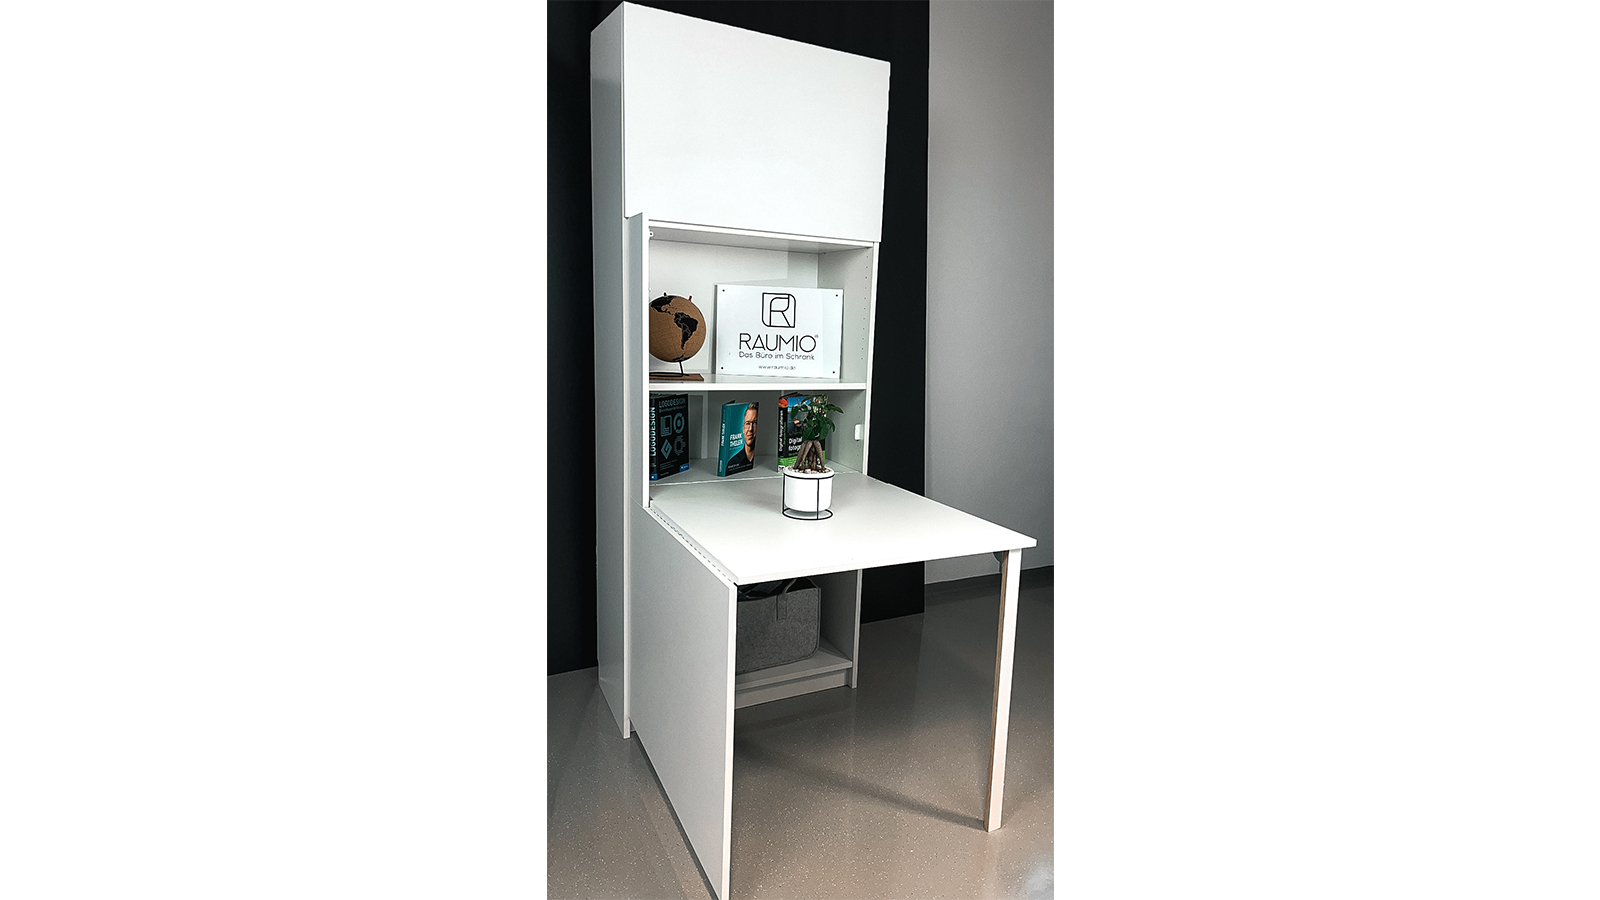 ausgeklappter Schreibtisch im Schrank in Billy Regal von Ikea von Raumio